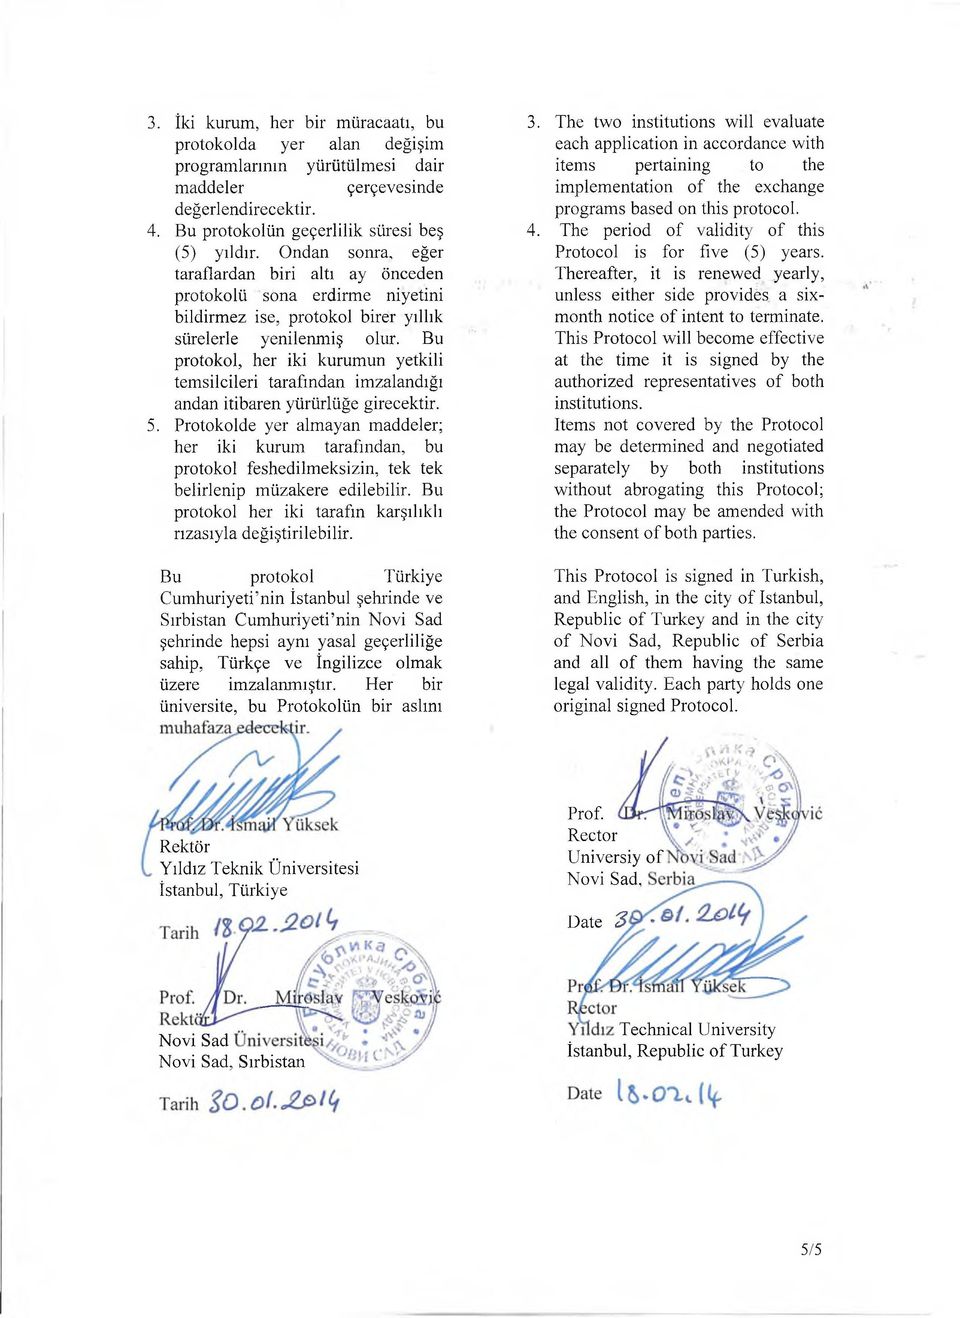 Bu protokol, her iki kurumun yetkili temsilcileri tarafından imzalandığı andan itibaren yürürlüğe girecektir. 5.